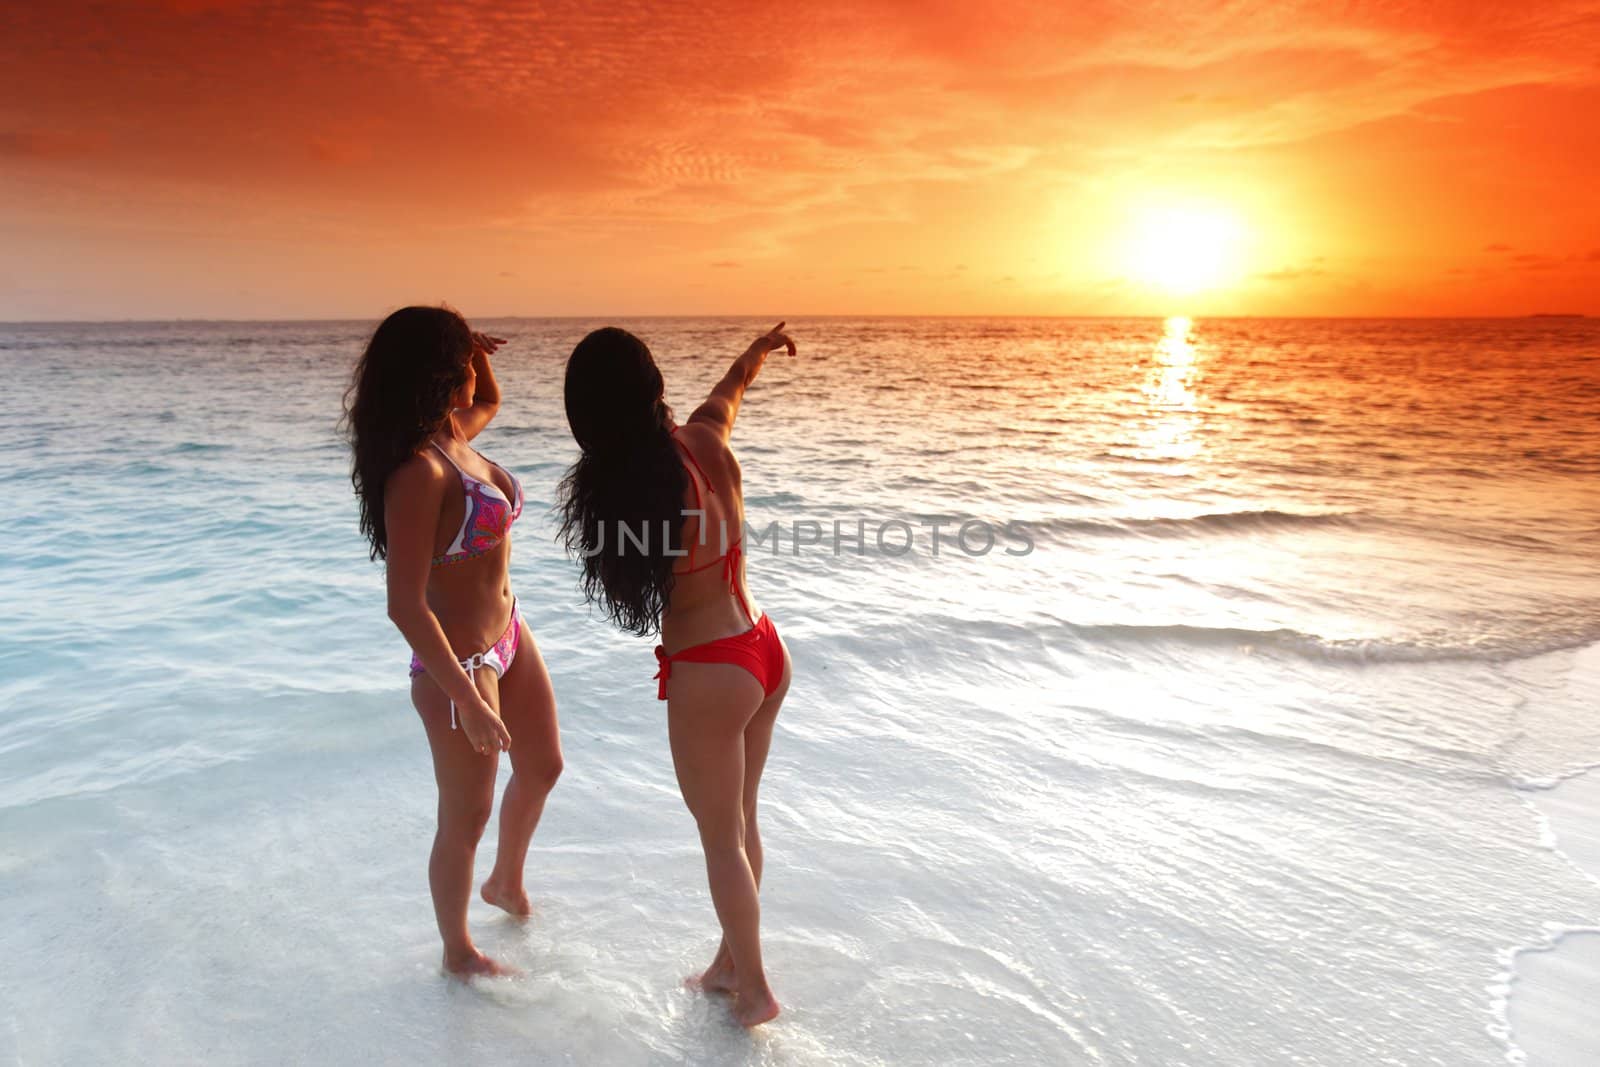 Two women enjoying sunset on beach by Yellowj